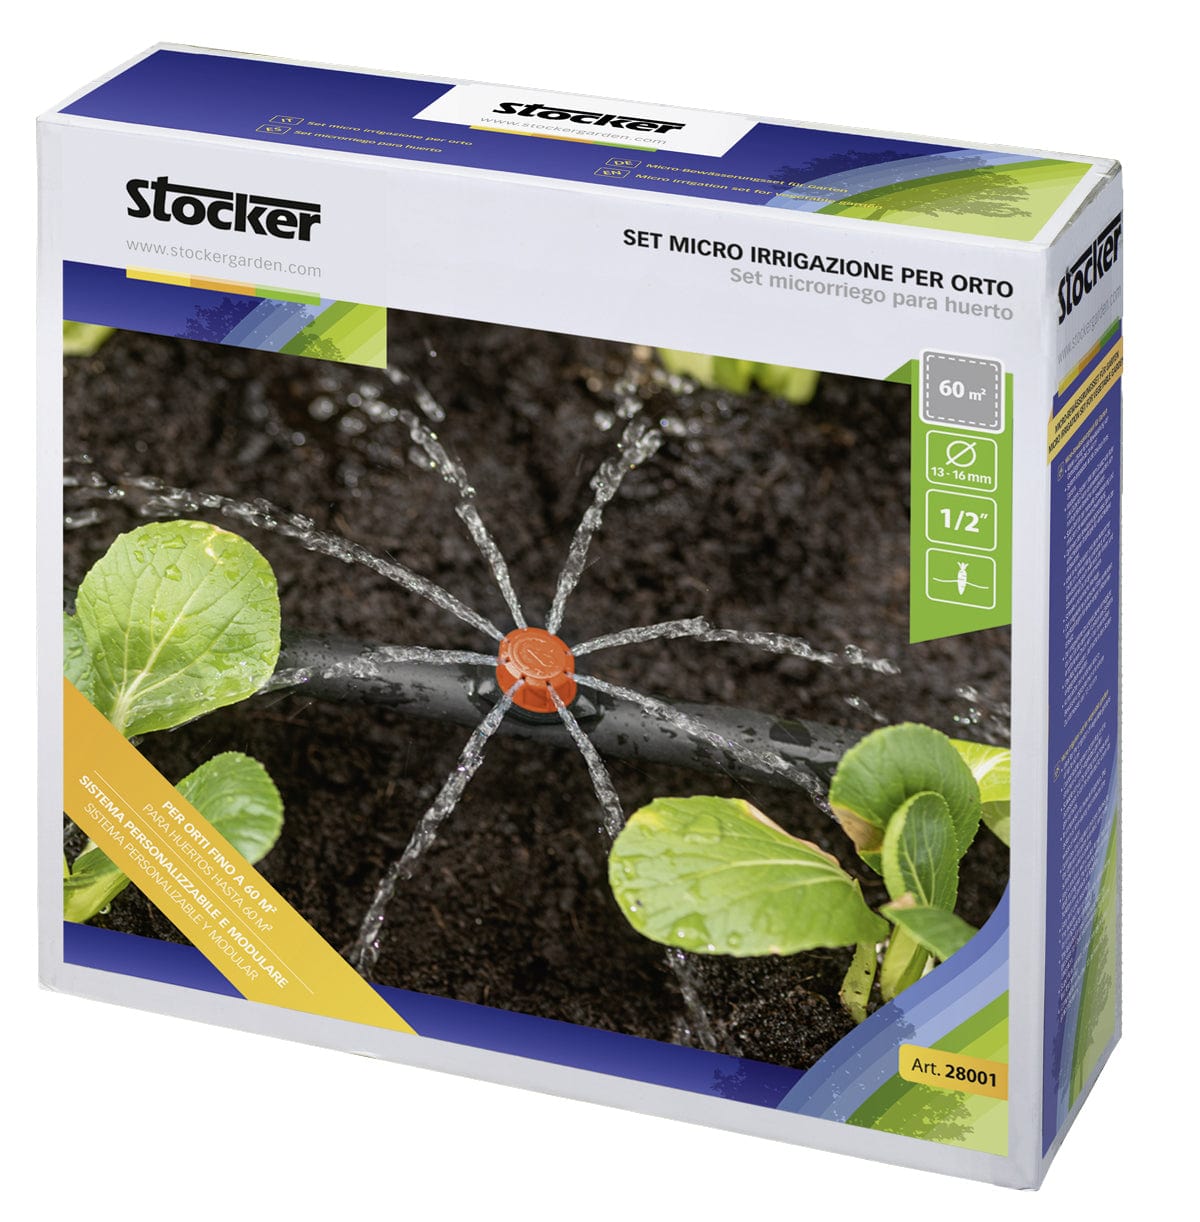 Set micro irrigazione per orto - Stocker Stocker (2498404)